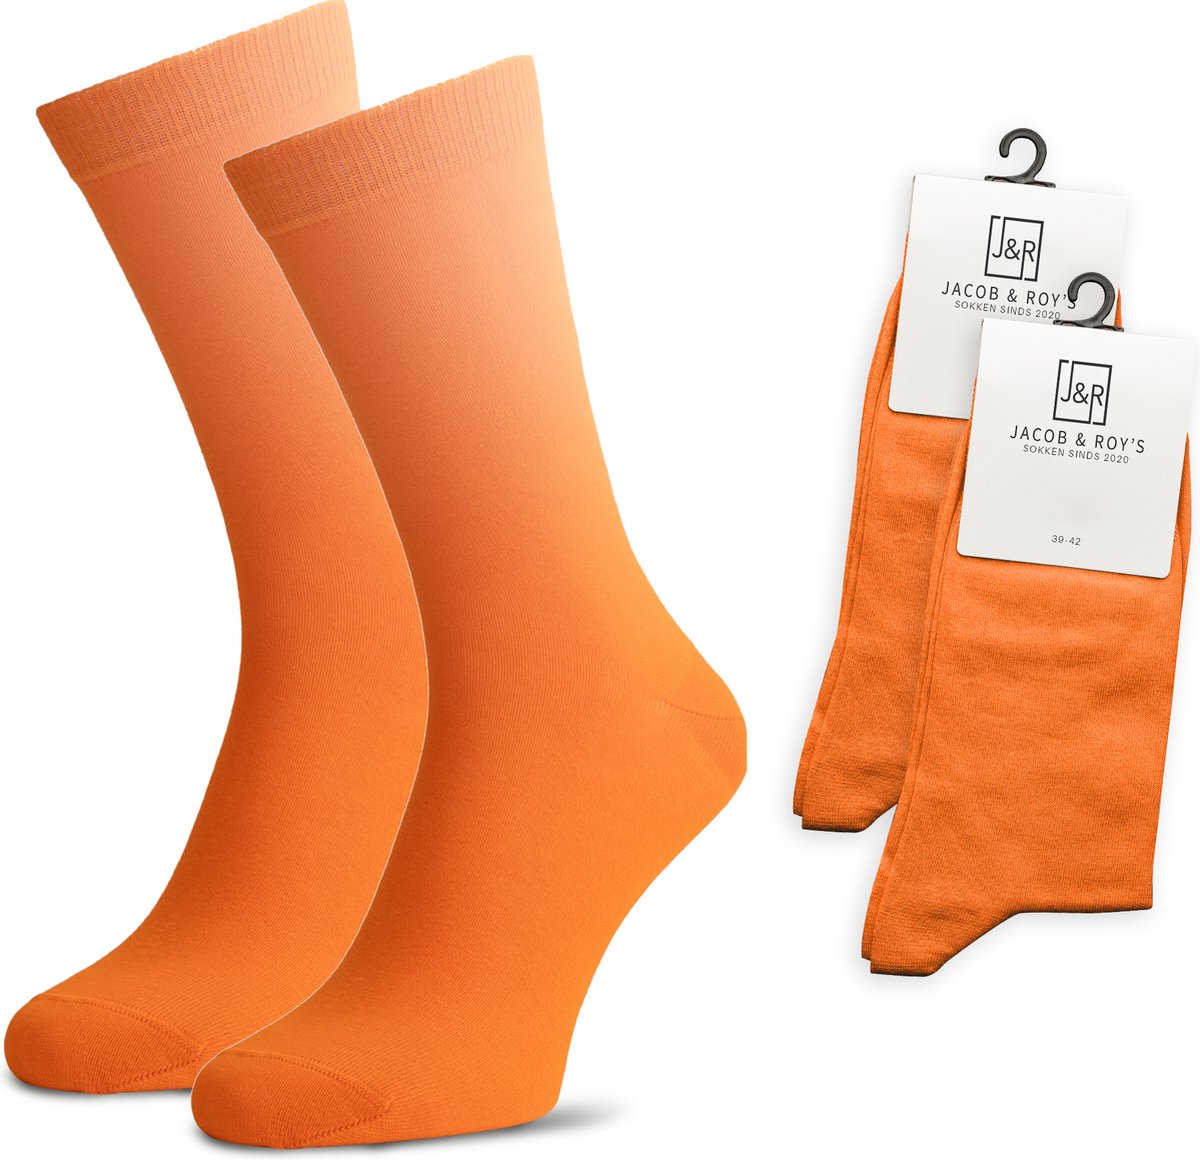 Jacob & Roy's 2 Paar Oranje Sokken - Kousen - Heren & Dames - Leuke Sokken - Vrolijke Sokken - Grappige Sokken - Katoen - Maat 43-46 - Funny Socks - Gekleurde Sokken Waar Je Happy Van Wordt